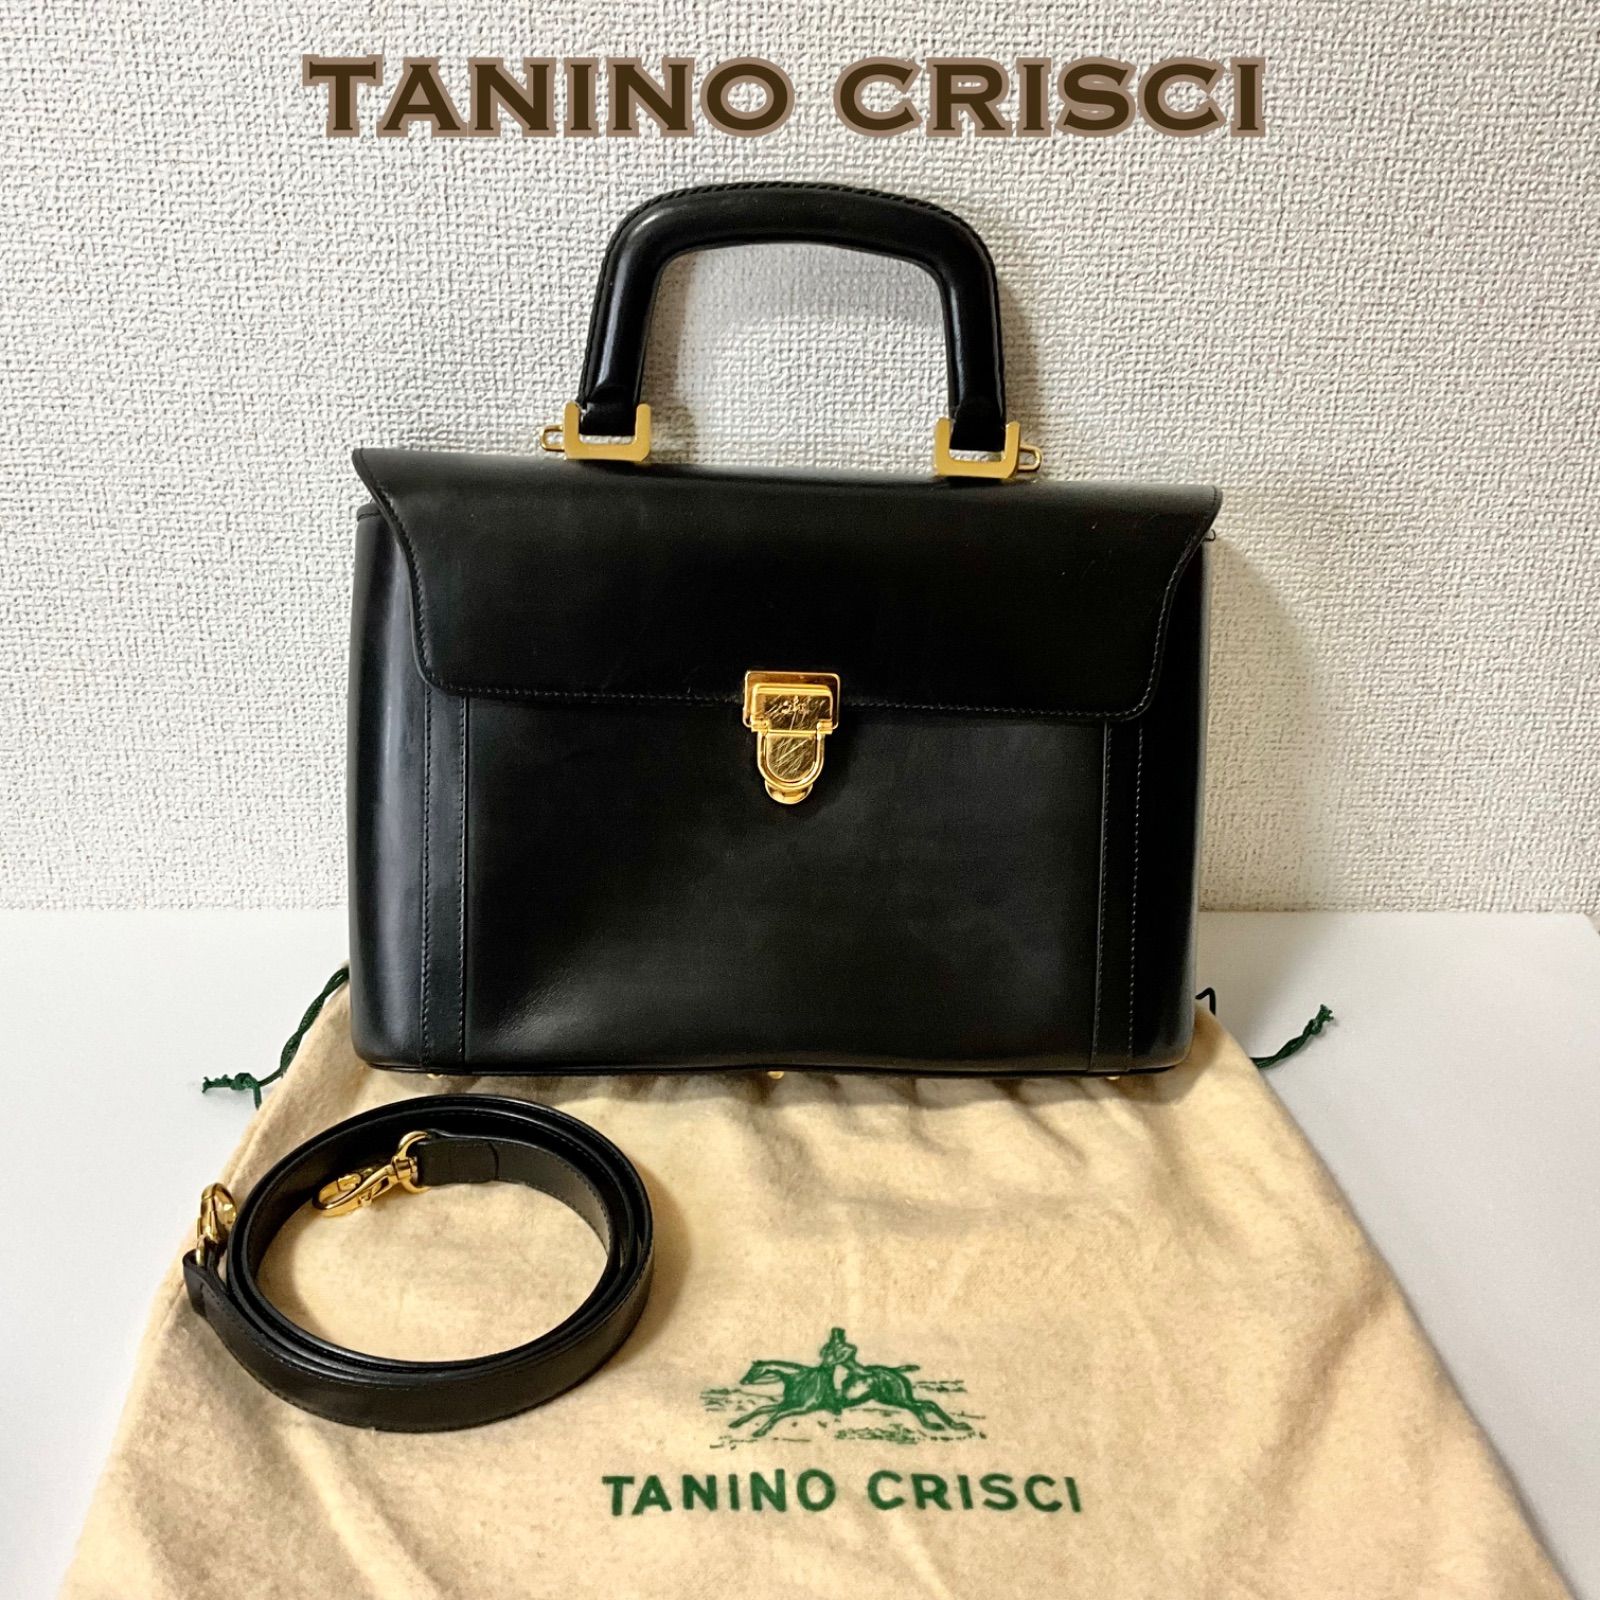 TANINO CRISCI タニノクリスチー 2way バッグ 黒 - メルカリ